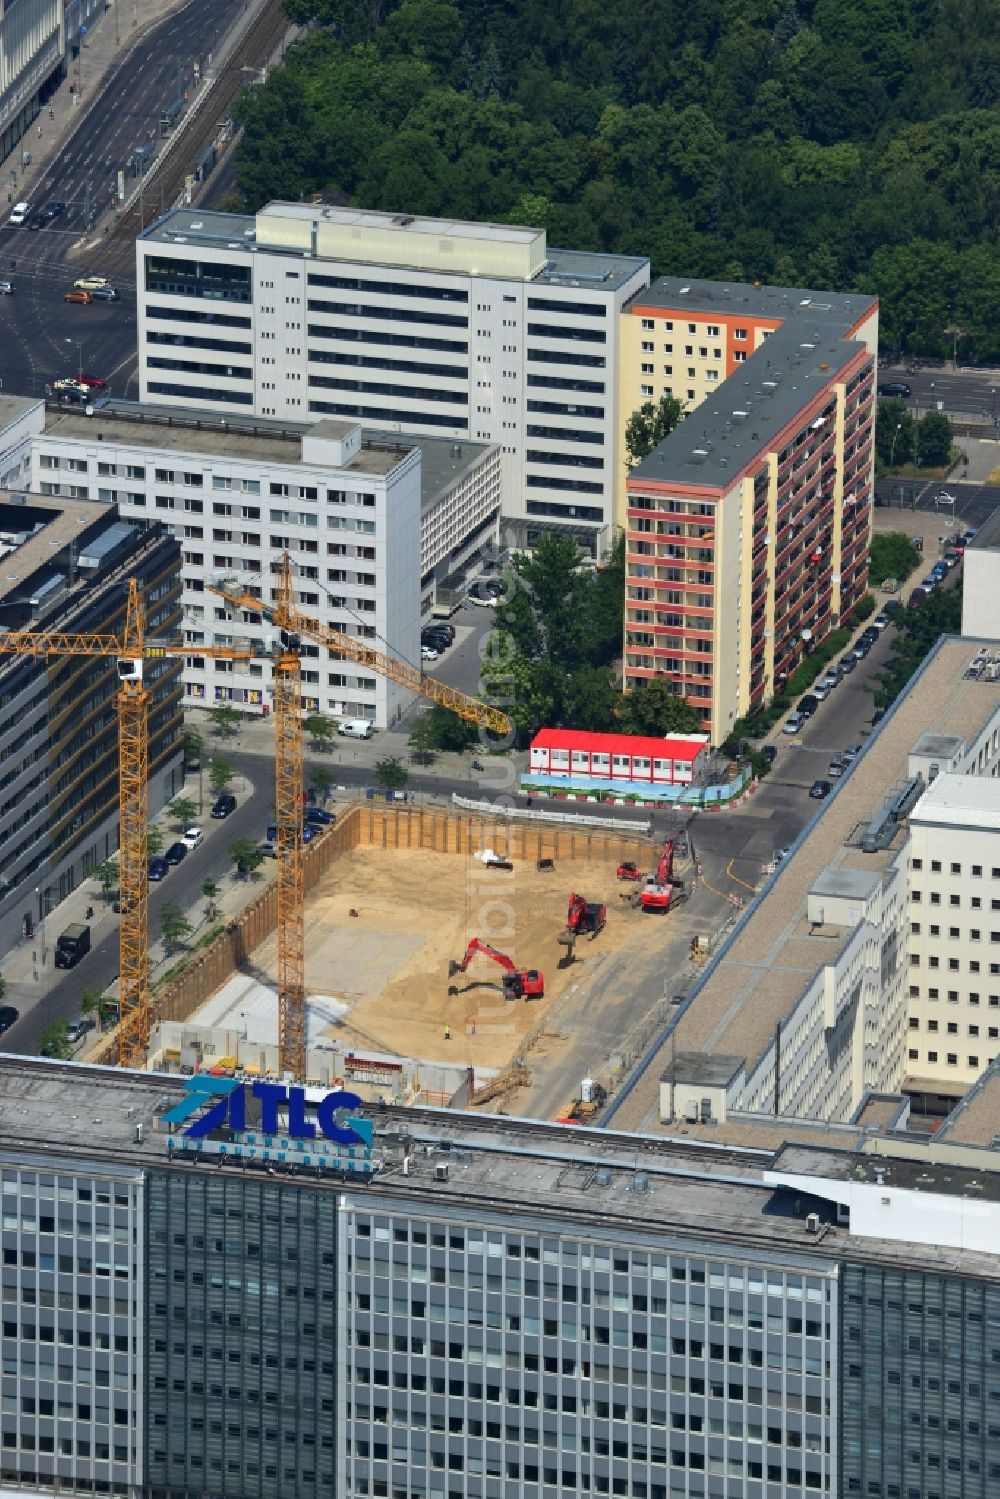 Luftbild Berlin Prenzlauer Berg - Baustelle zum Neubau des Wohnquartier am Alexanderplatz in Berlin